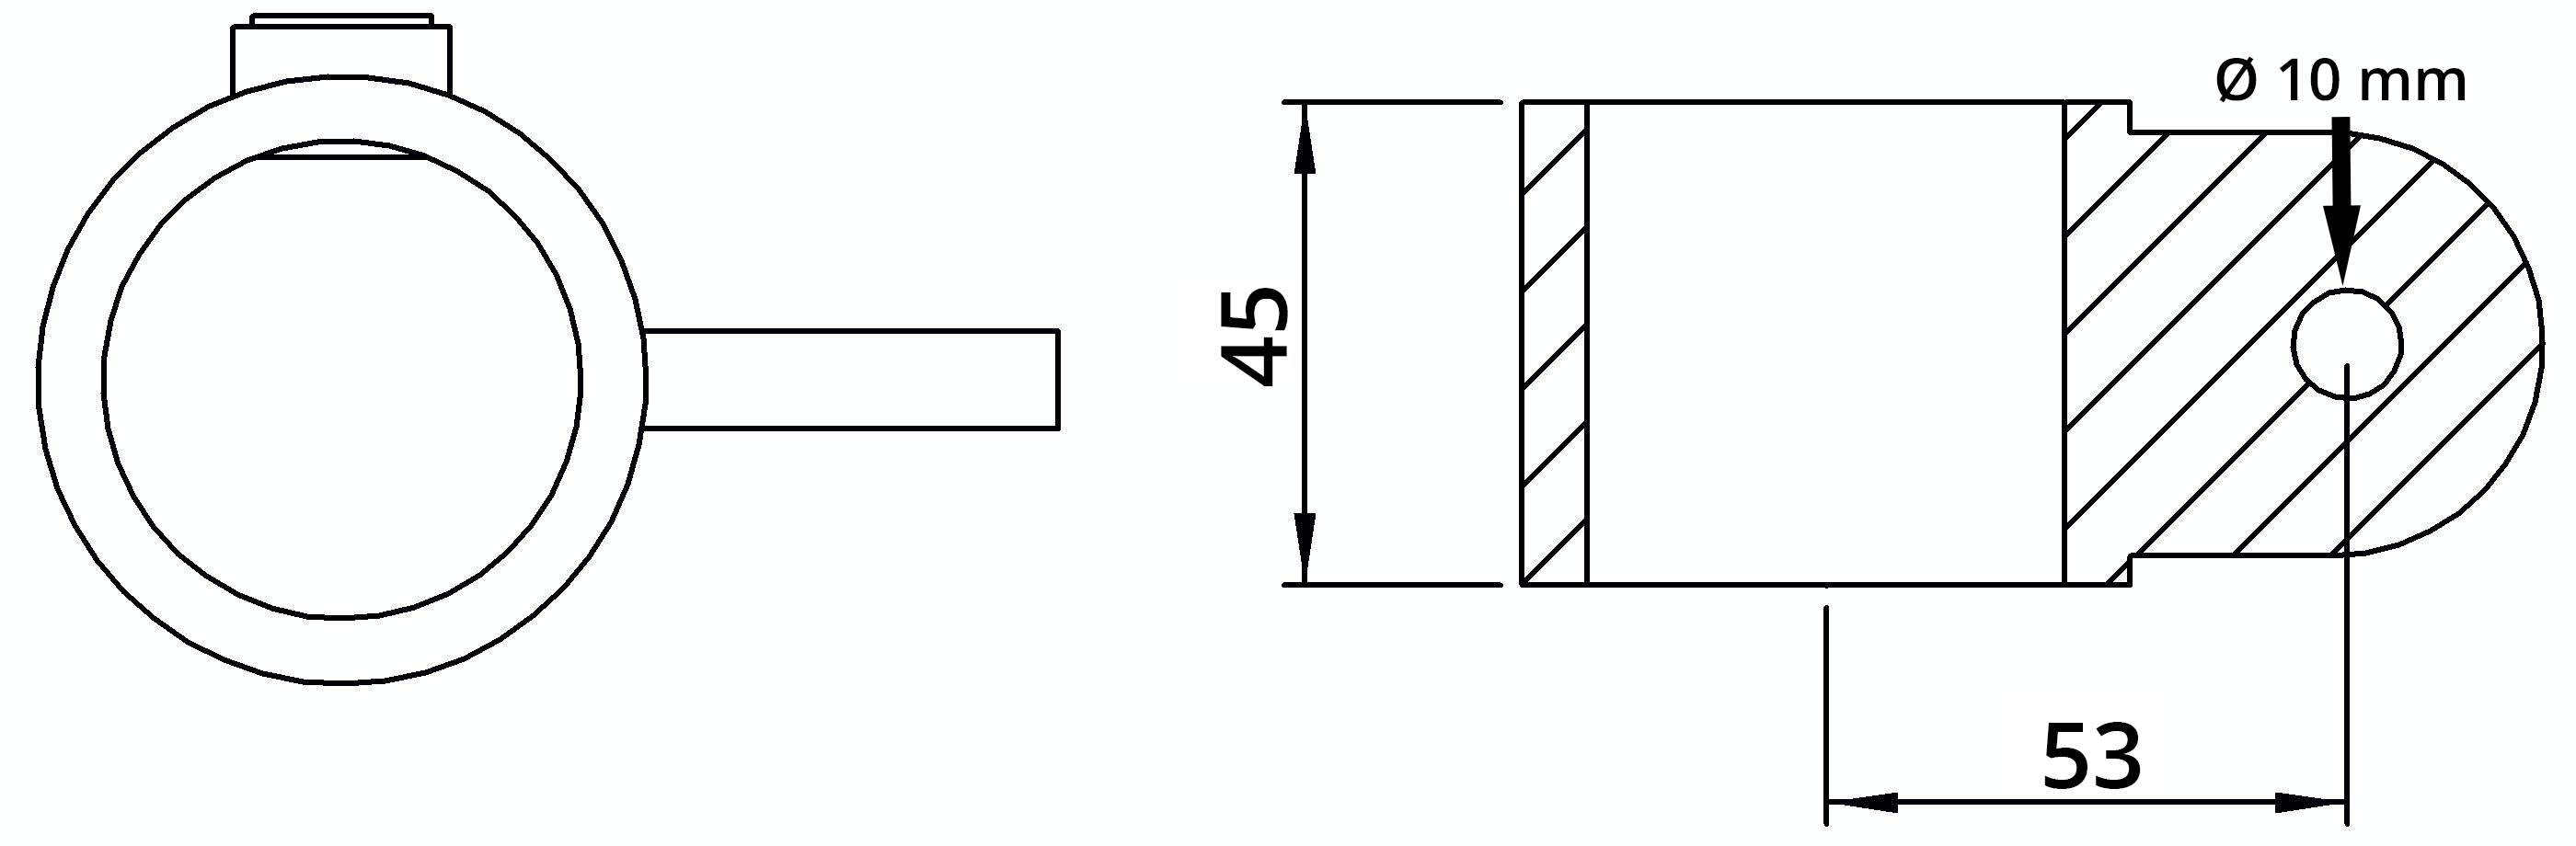 Rohrverbinder | Gelenkauge einfach | 173MD48 | 48,3 mm | 1 1/2" | Temperguss u. Elektrogalvanisiert